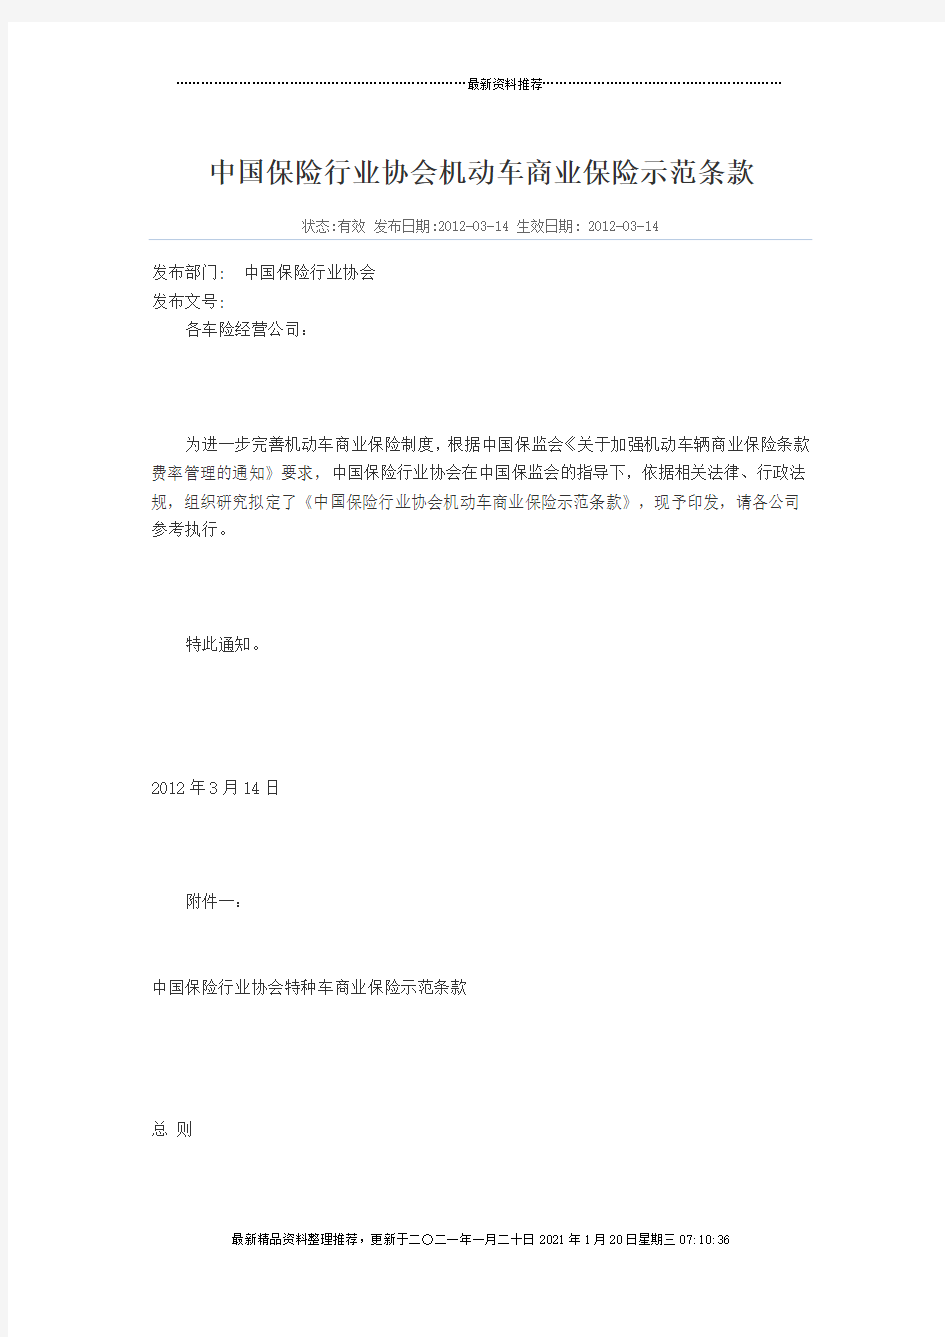 中国保险行业协会机动车商业保险示范条款